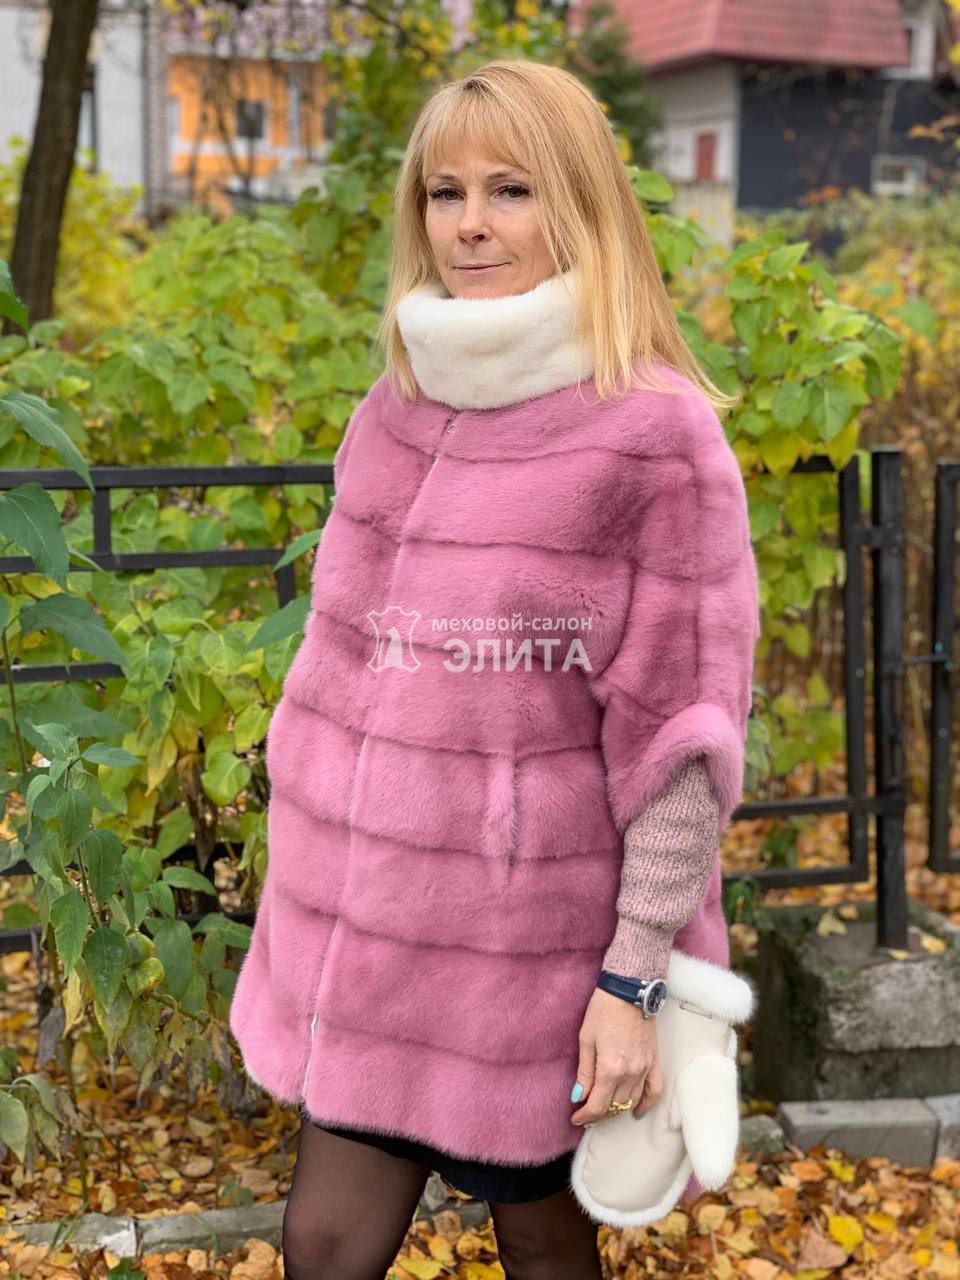 Норковый свитер S-1705 р-р 42-52., цена 54470 рублей в интернет-магазине кожи и меха ЭЛИТА. Вид 2